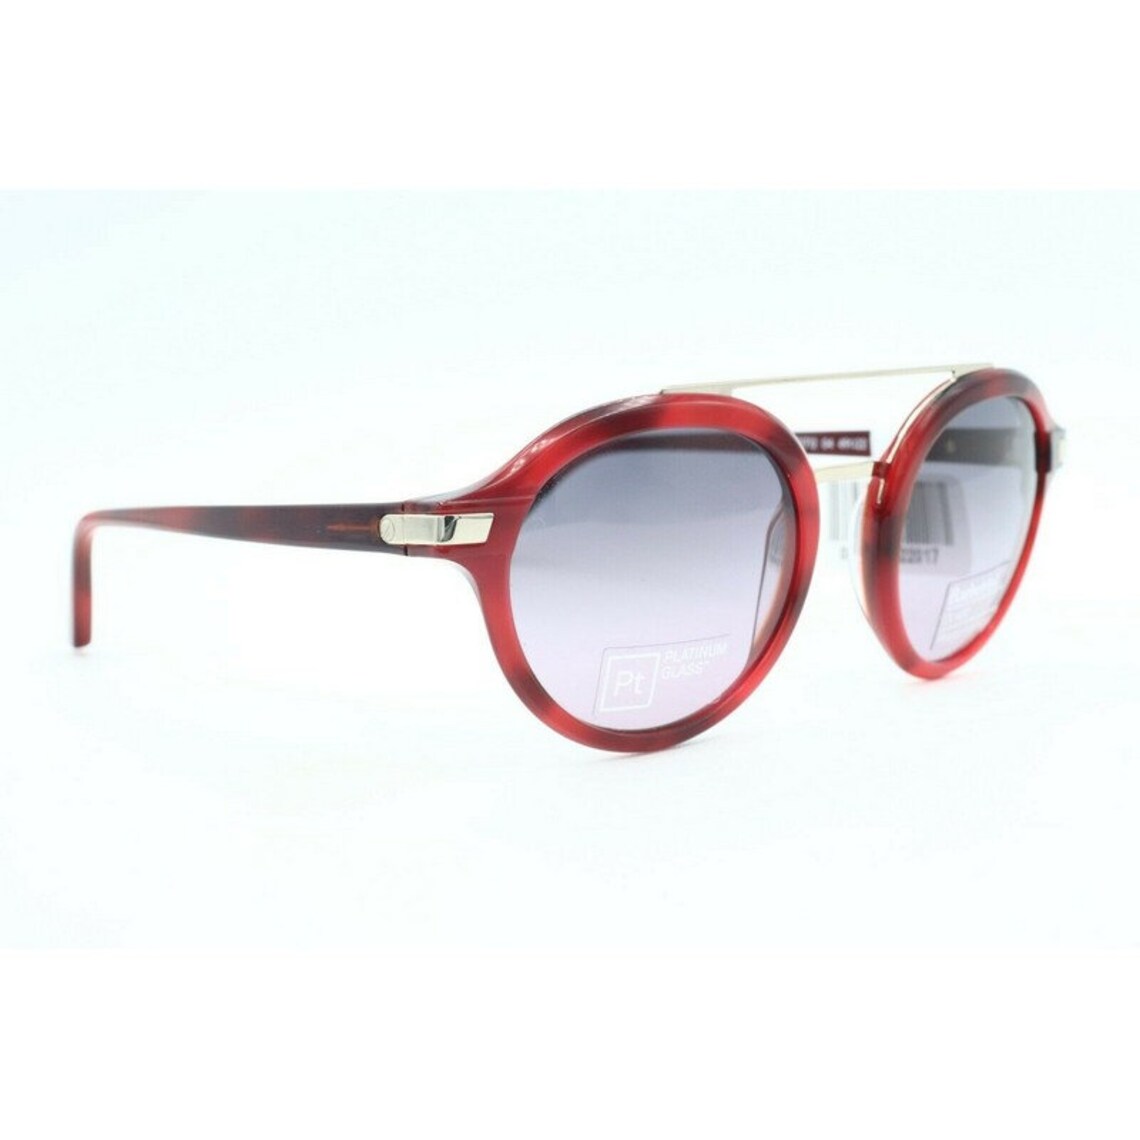 Barberini MAGELLANO BR1712-04 Red Round Sunglasses Gray Lenses - Etsy